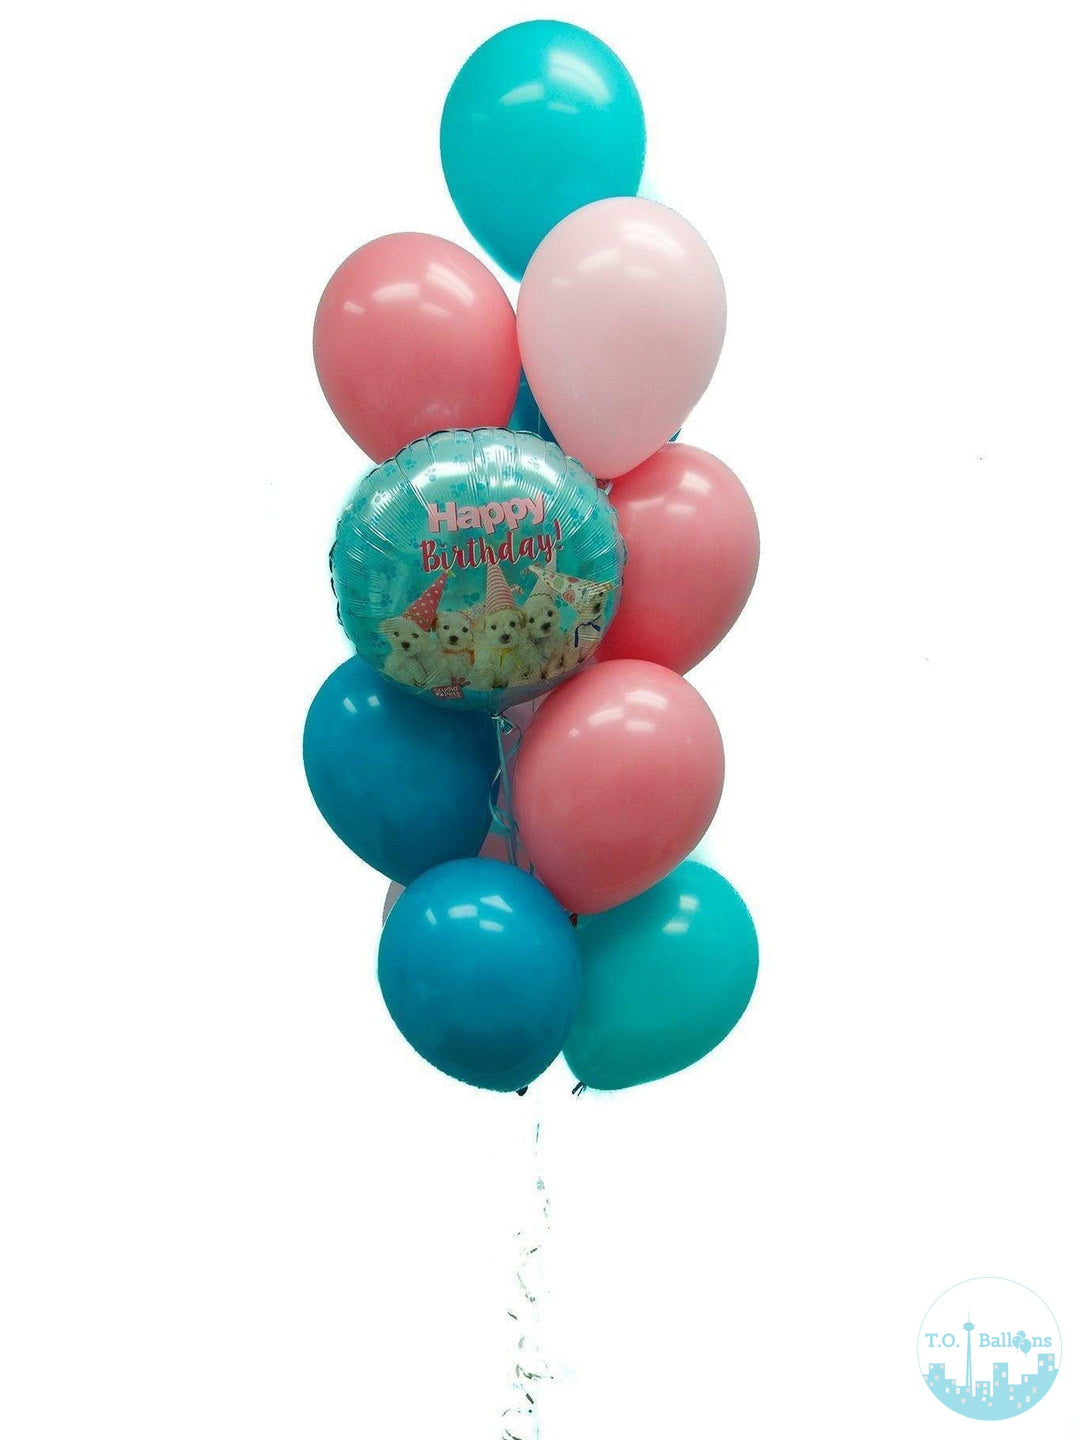 JUMBO BIRTHDAY ARRANGEMENT Balloons T.O. Balloons 